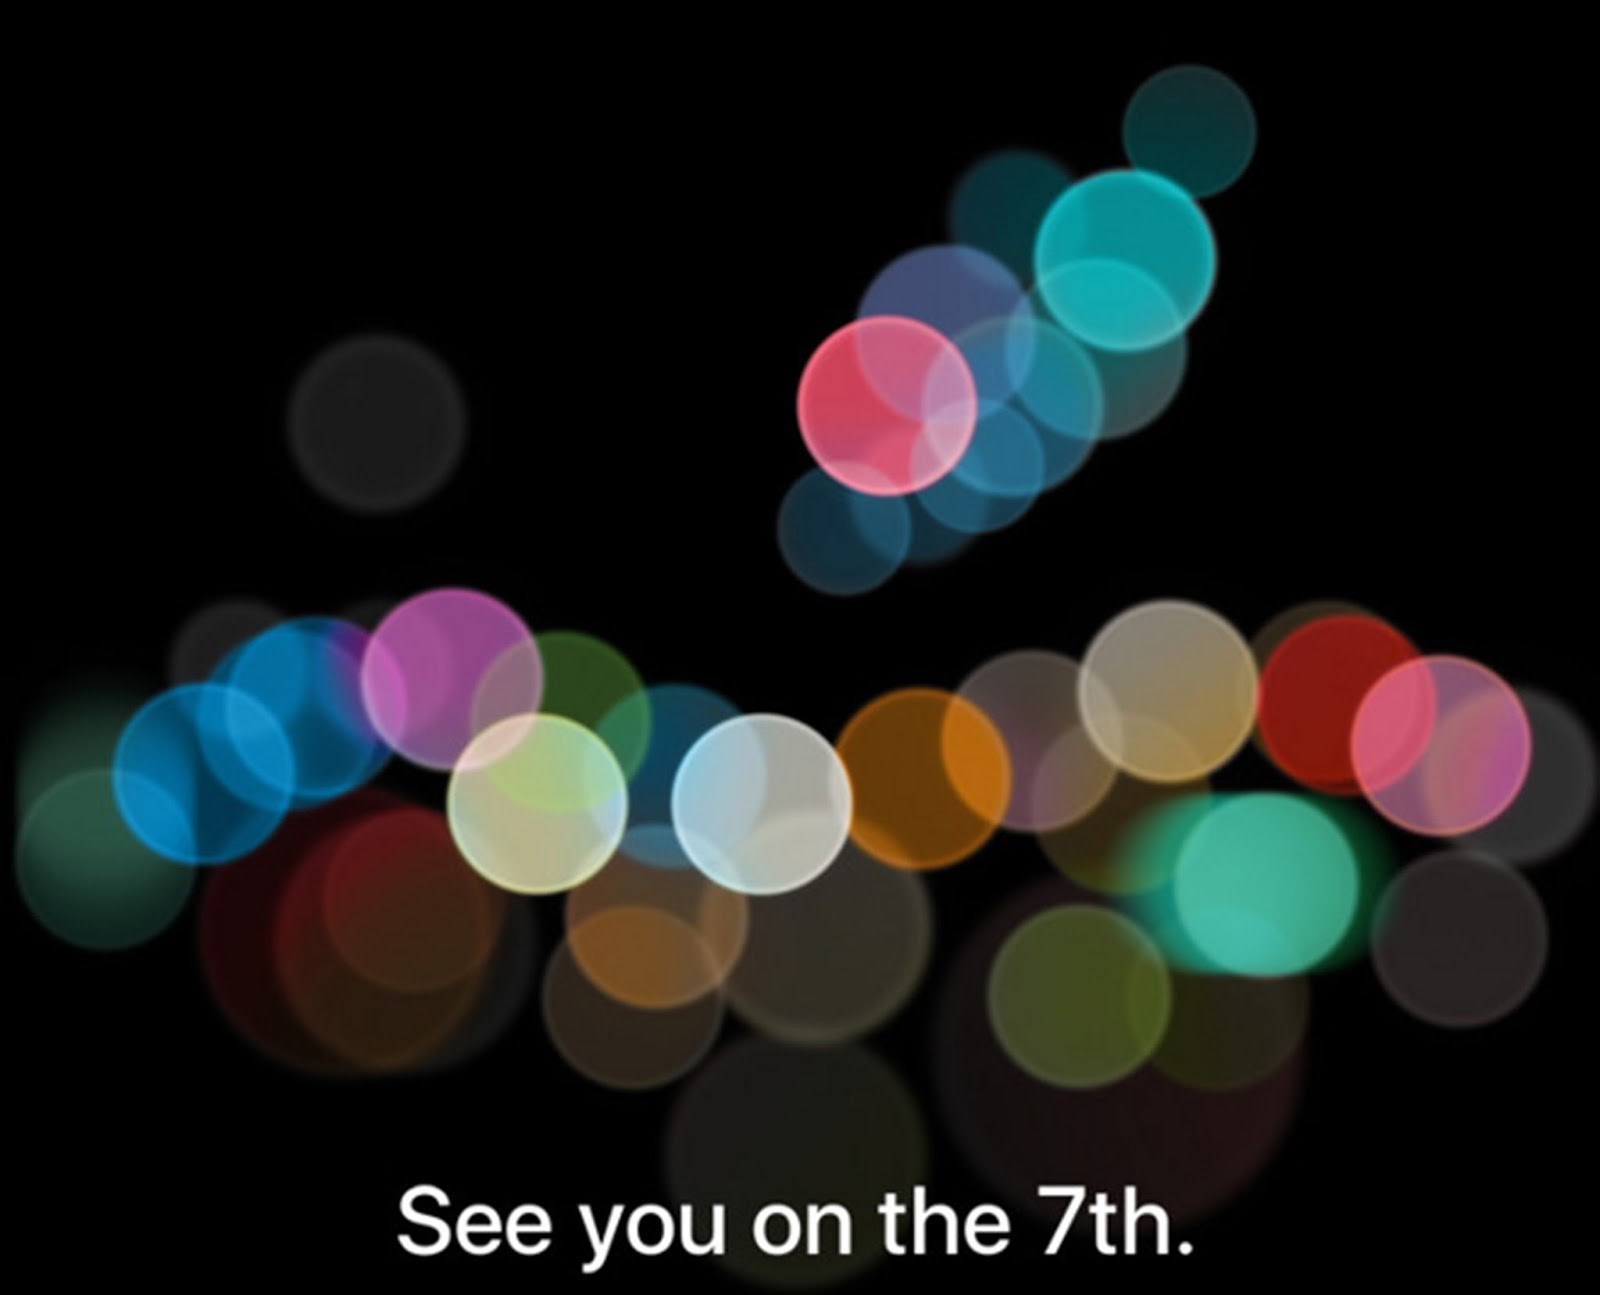 Apple September 7th Media Event Banner Image